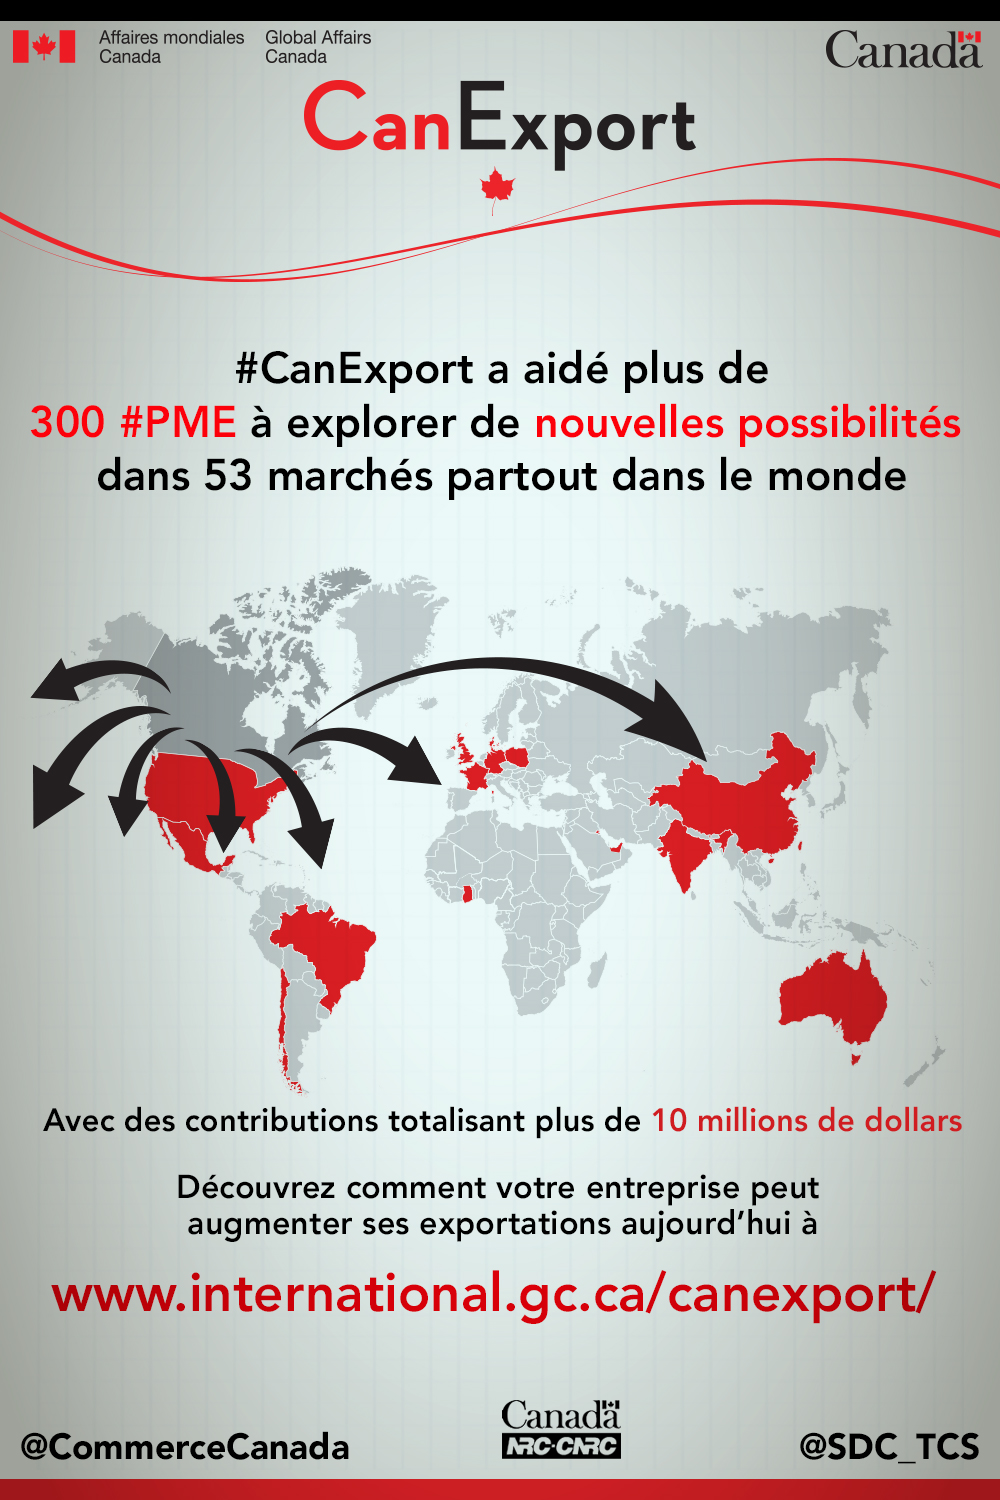 #CanExport a aidé plus de 300 #PME à explorer de nouvelles possibilités dans 53 marchés partout dans le monde; Avec des contributions totalisant plus de 10 millions de dollars. Découvrez comment votre entreprise peut augmenter ses exportations aujourd'hui à www.international.gc.ca/canexport/